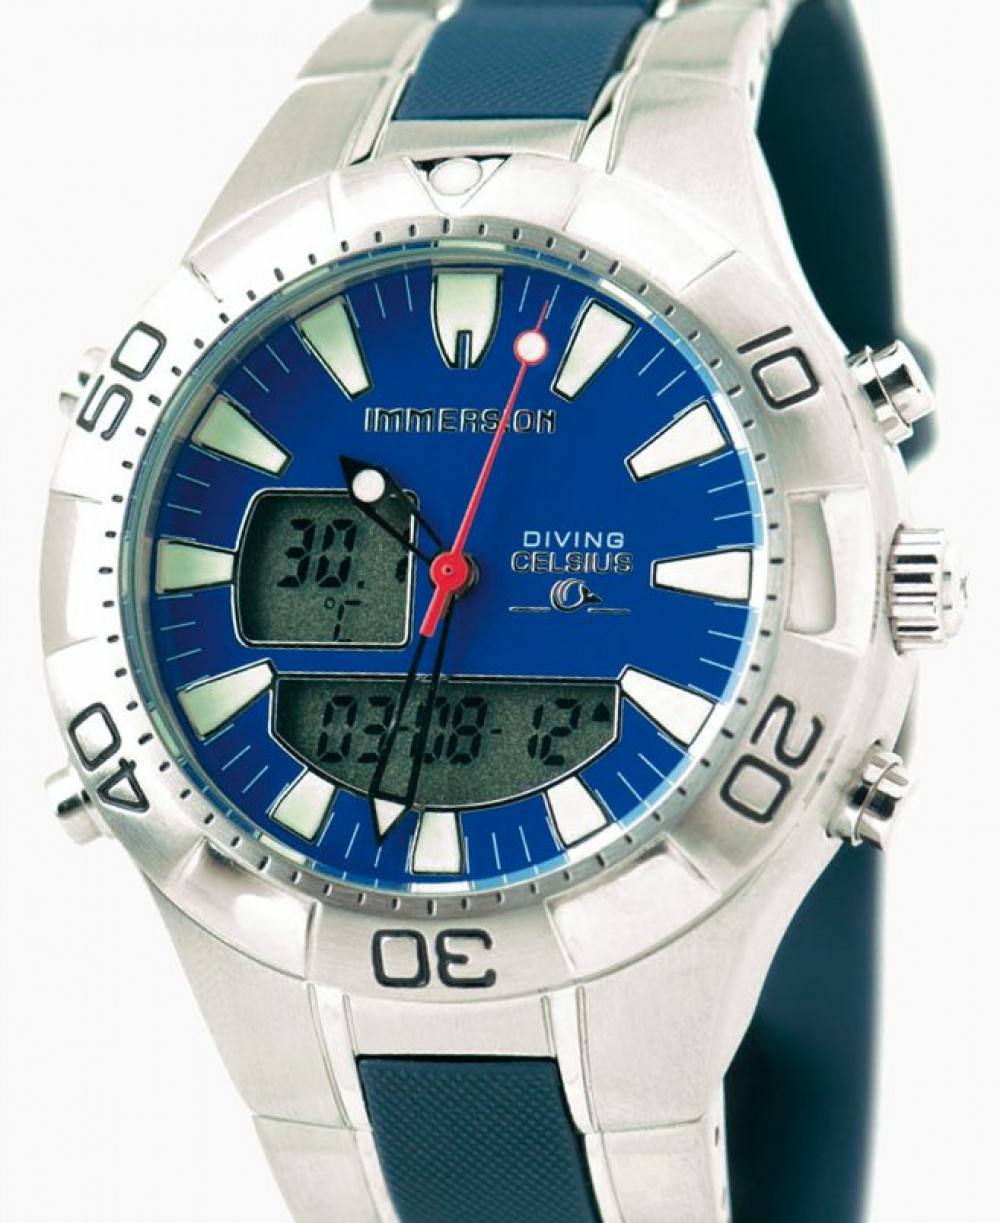 Zegarek firmy Immersion, model Celsius